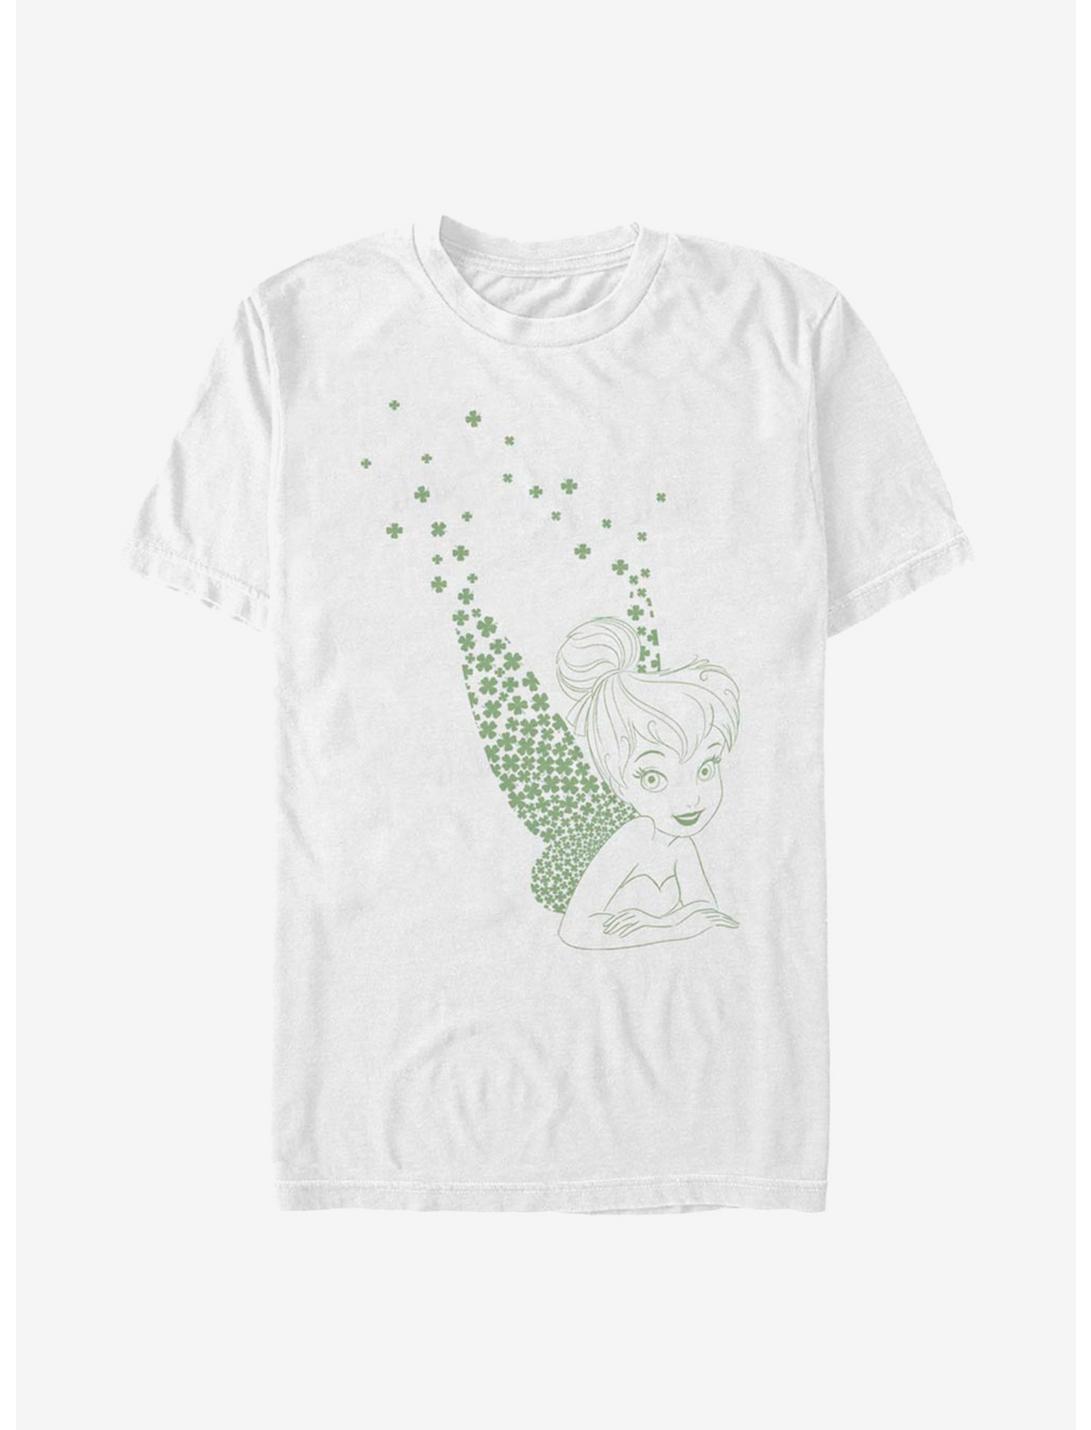 Disney Peter Pan Tink Clovers T-Shirt, WHITE, hi-res